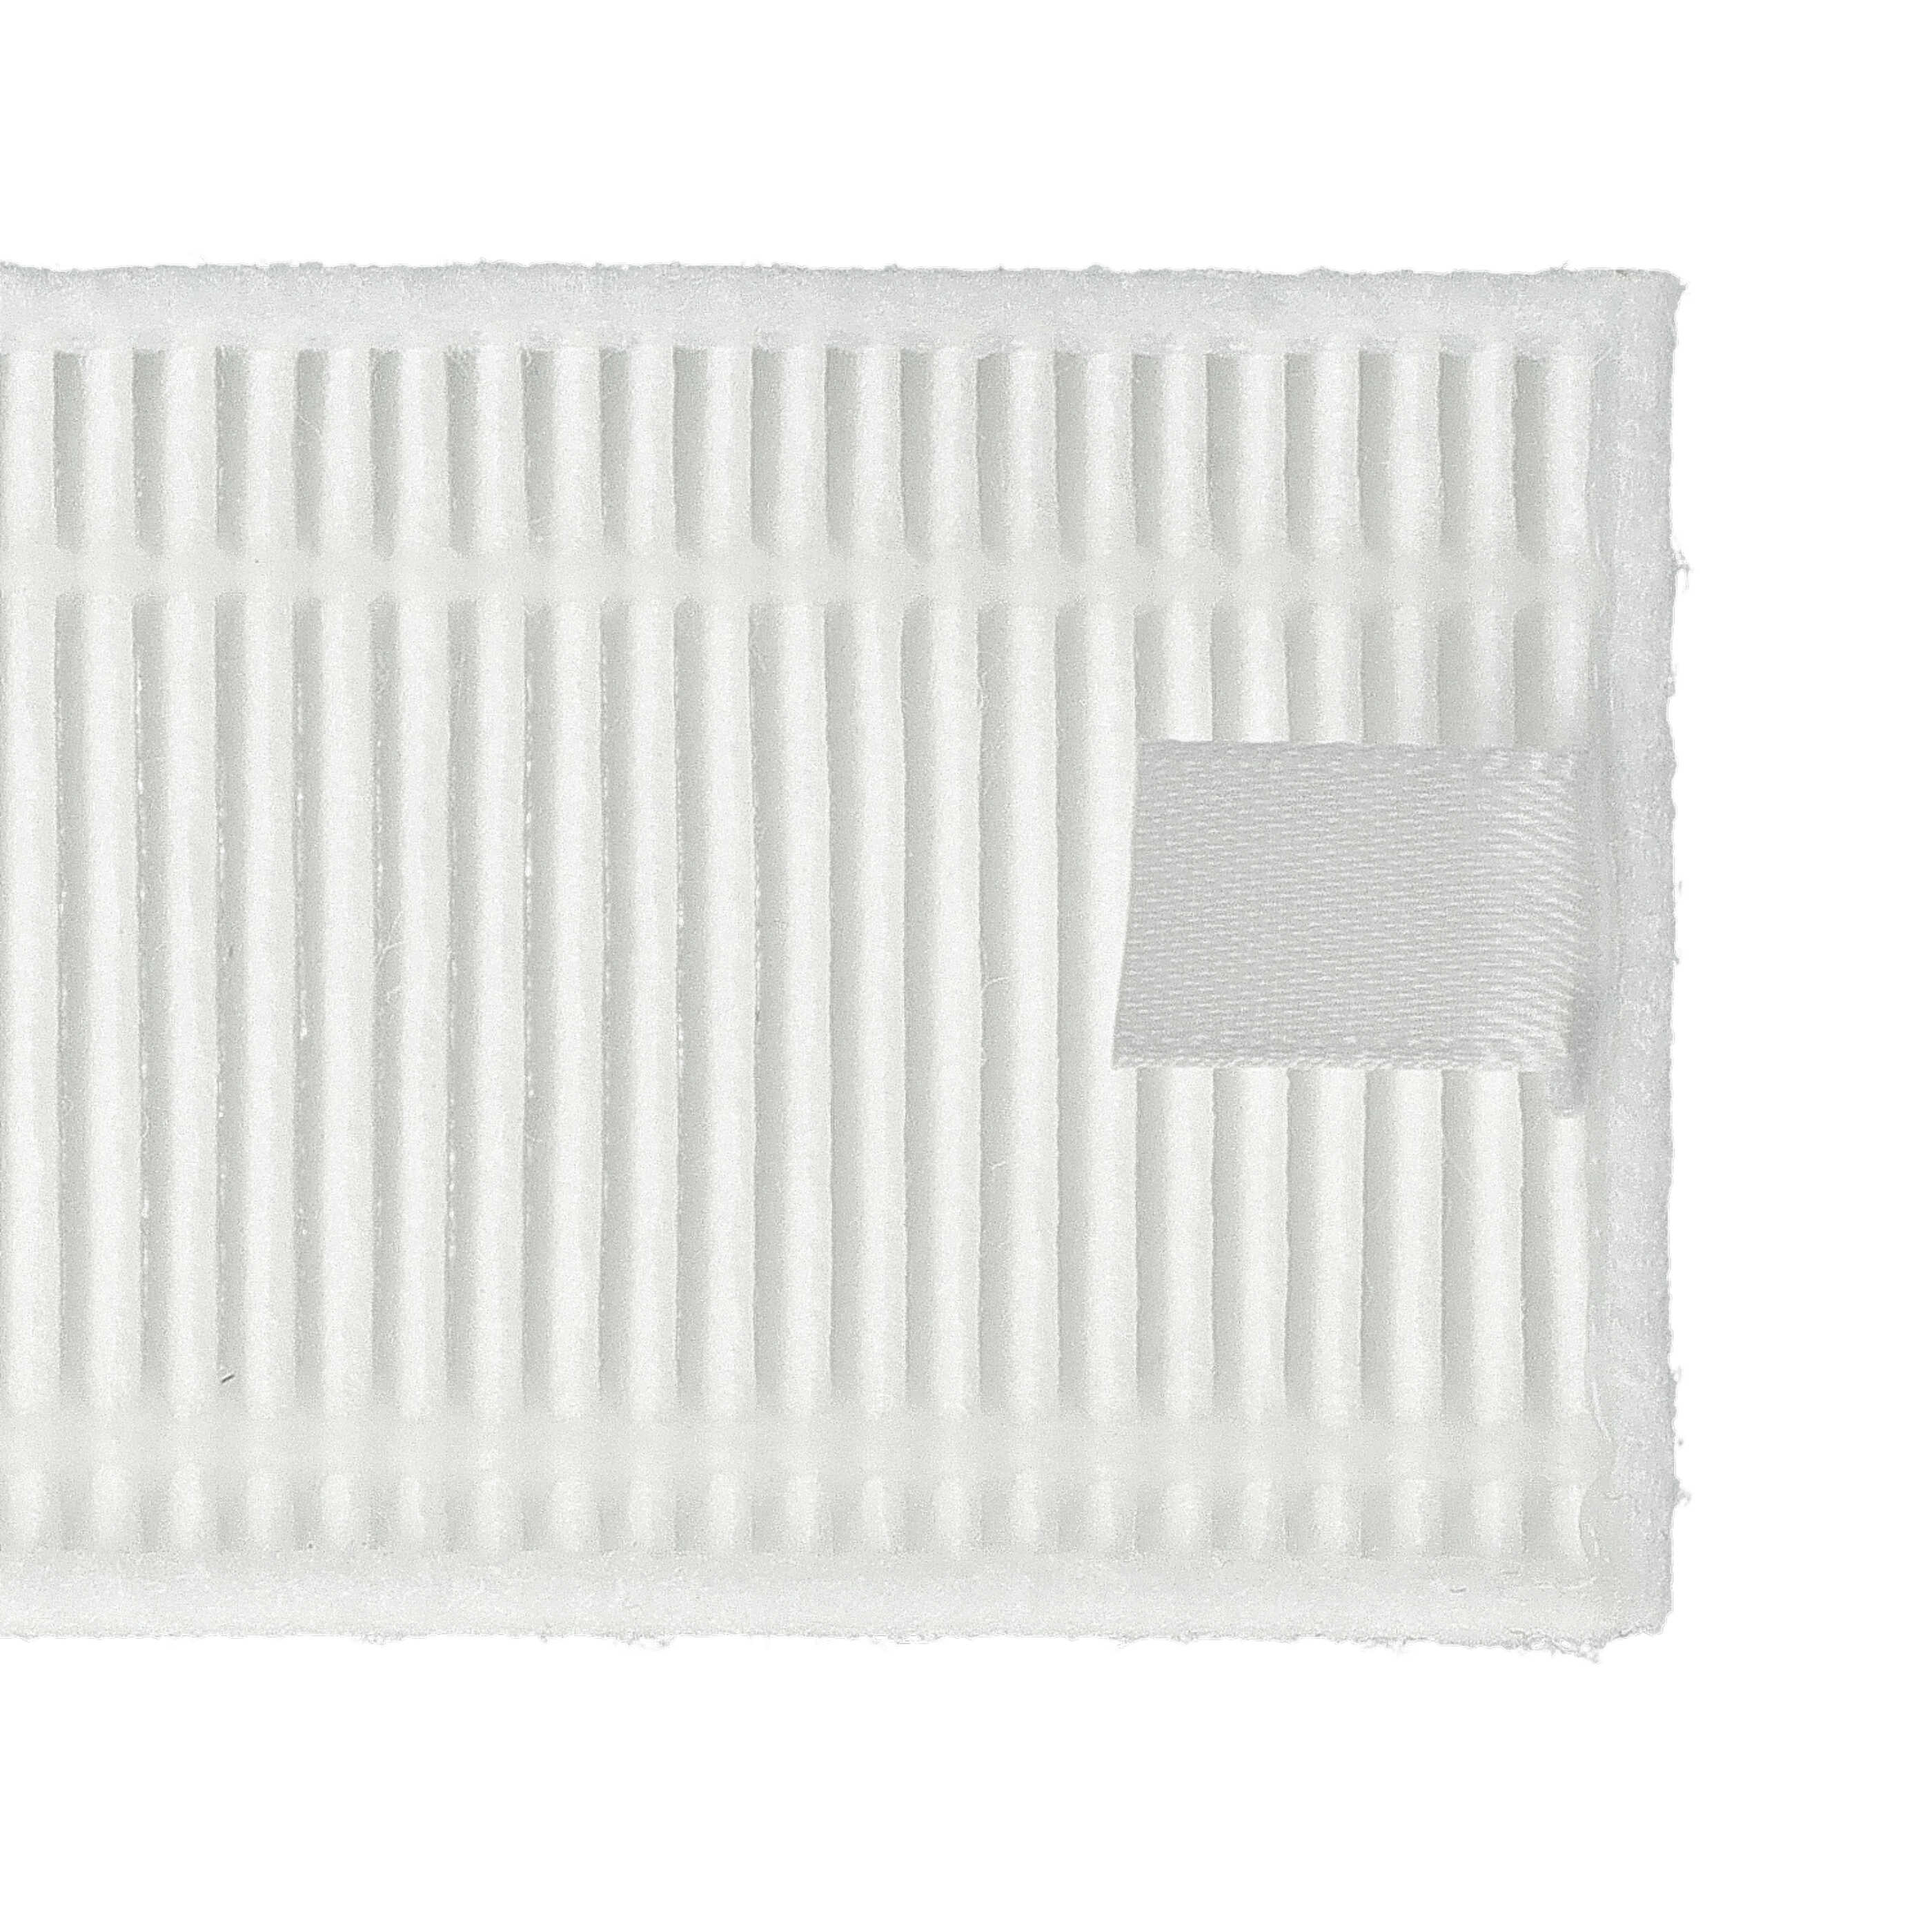 4x HEPA filter / sponge filter suitable for Xiaomi Mijia G1 Vacuum Cleaner